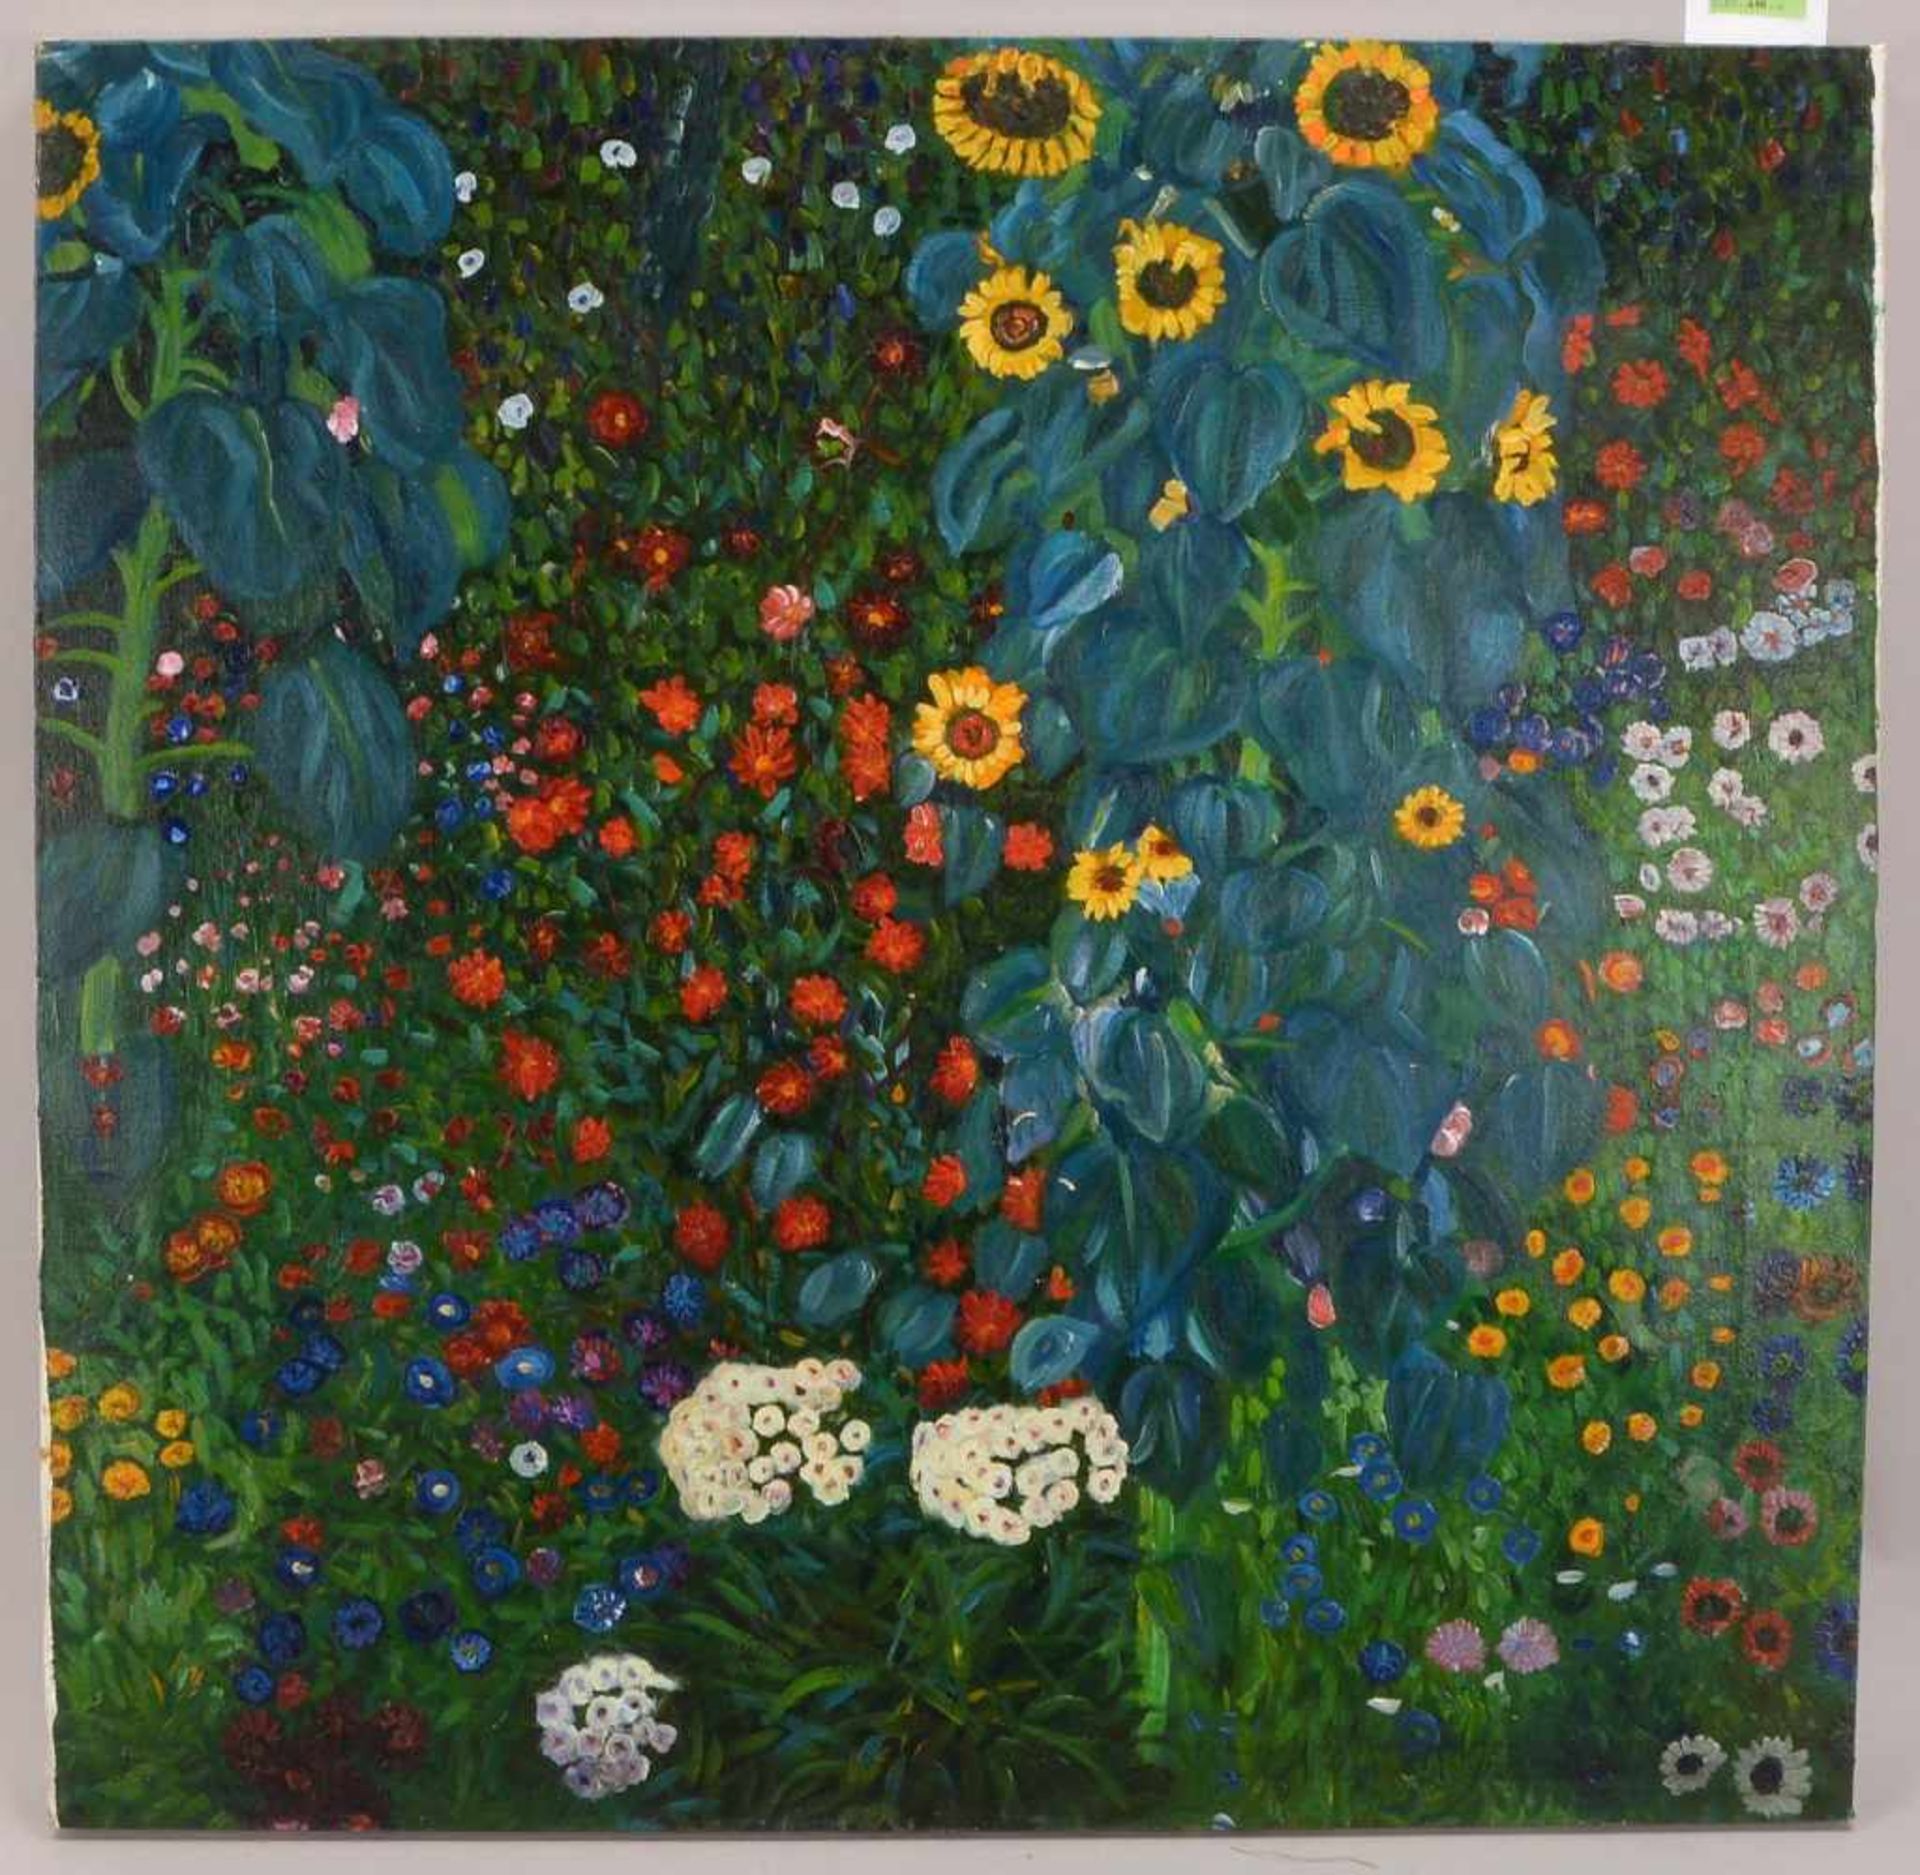 Gemälde (nach Gustav Klimt), 'Garten mit Sonnenblumen', Öl/Lw, unsigniert und ungerahmt; Maße 68,5 x